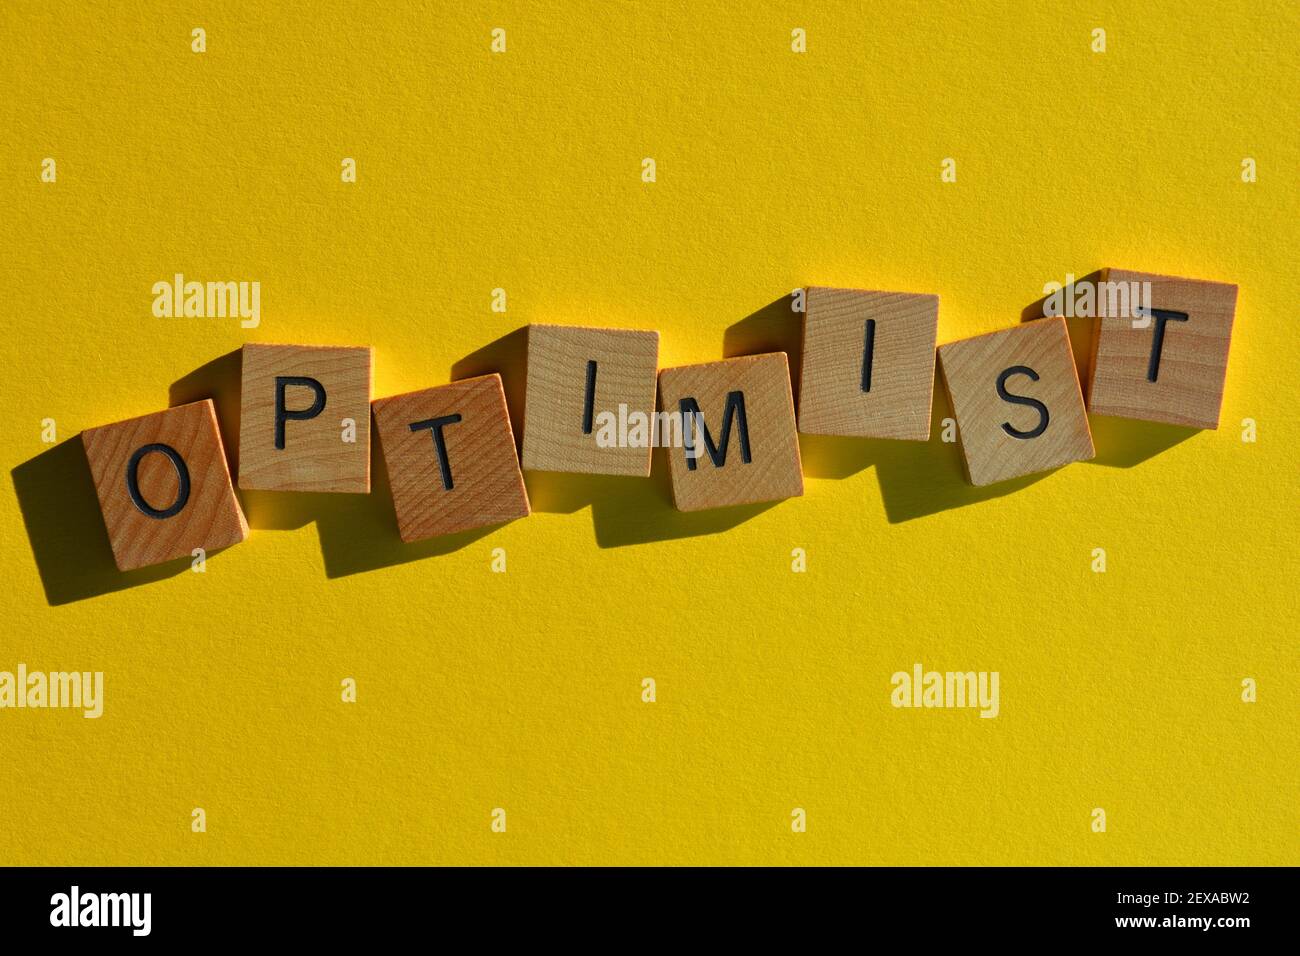 Optimiste, mot en lettres de l'alphabet de bois isolées sur fond jaune vif Banque D'Images